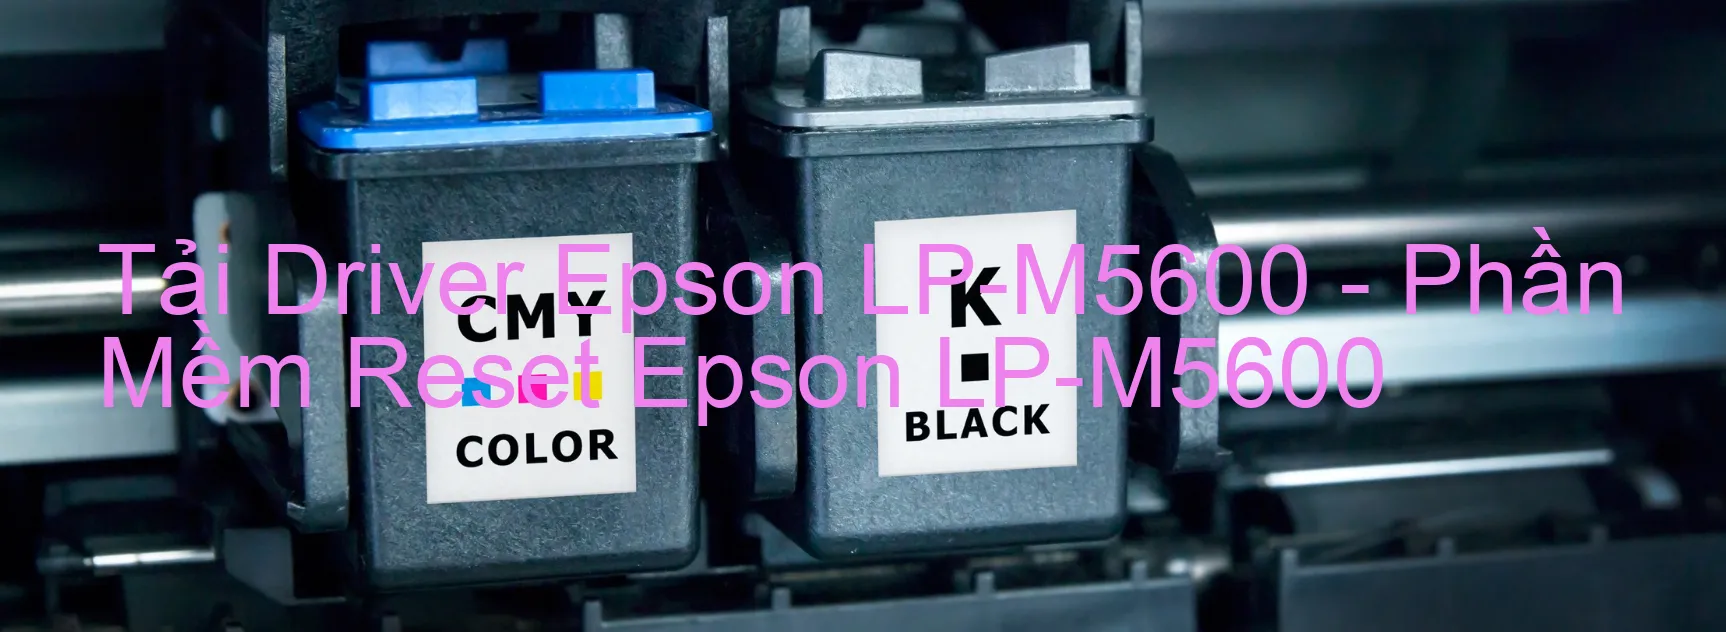 Driver Epson LP-M5600, Phần Mềm Reset Epson LP-M5600